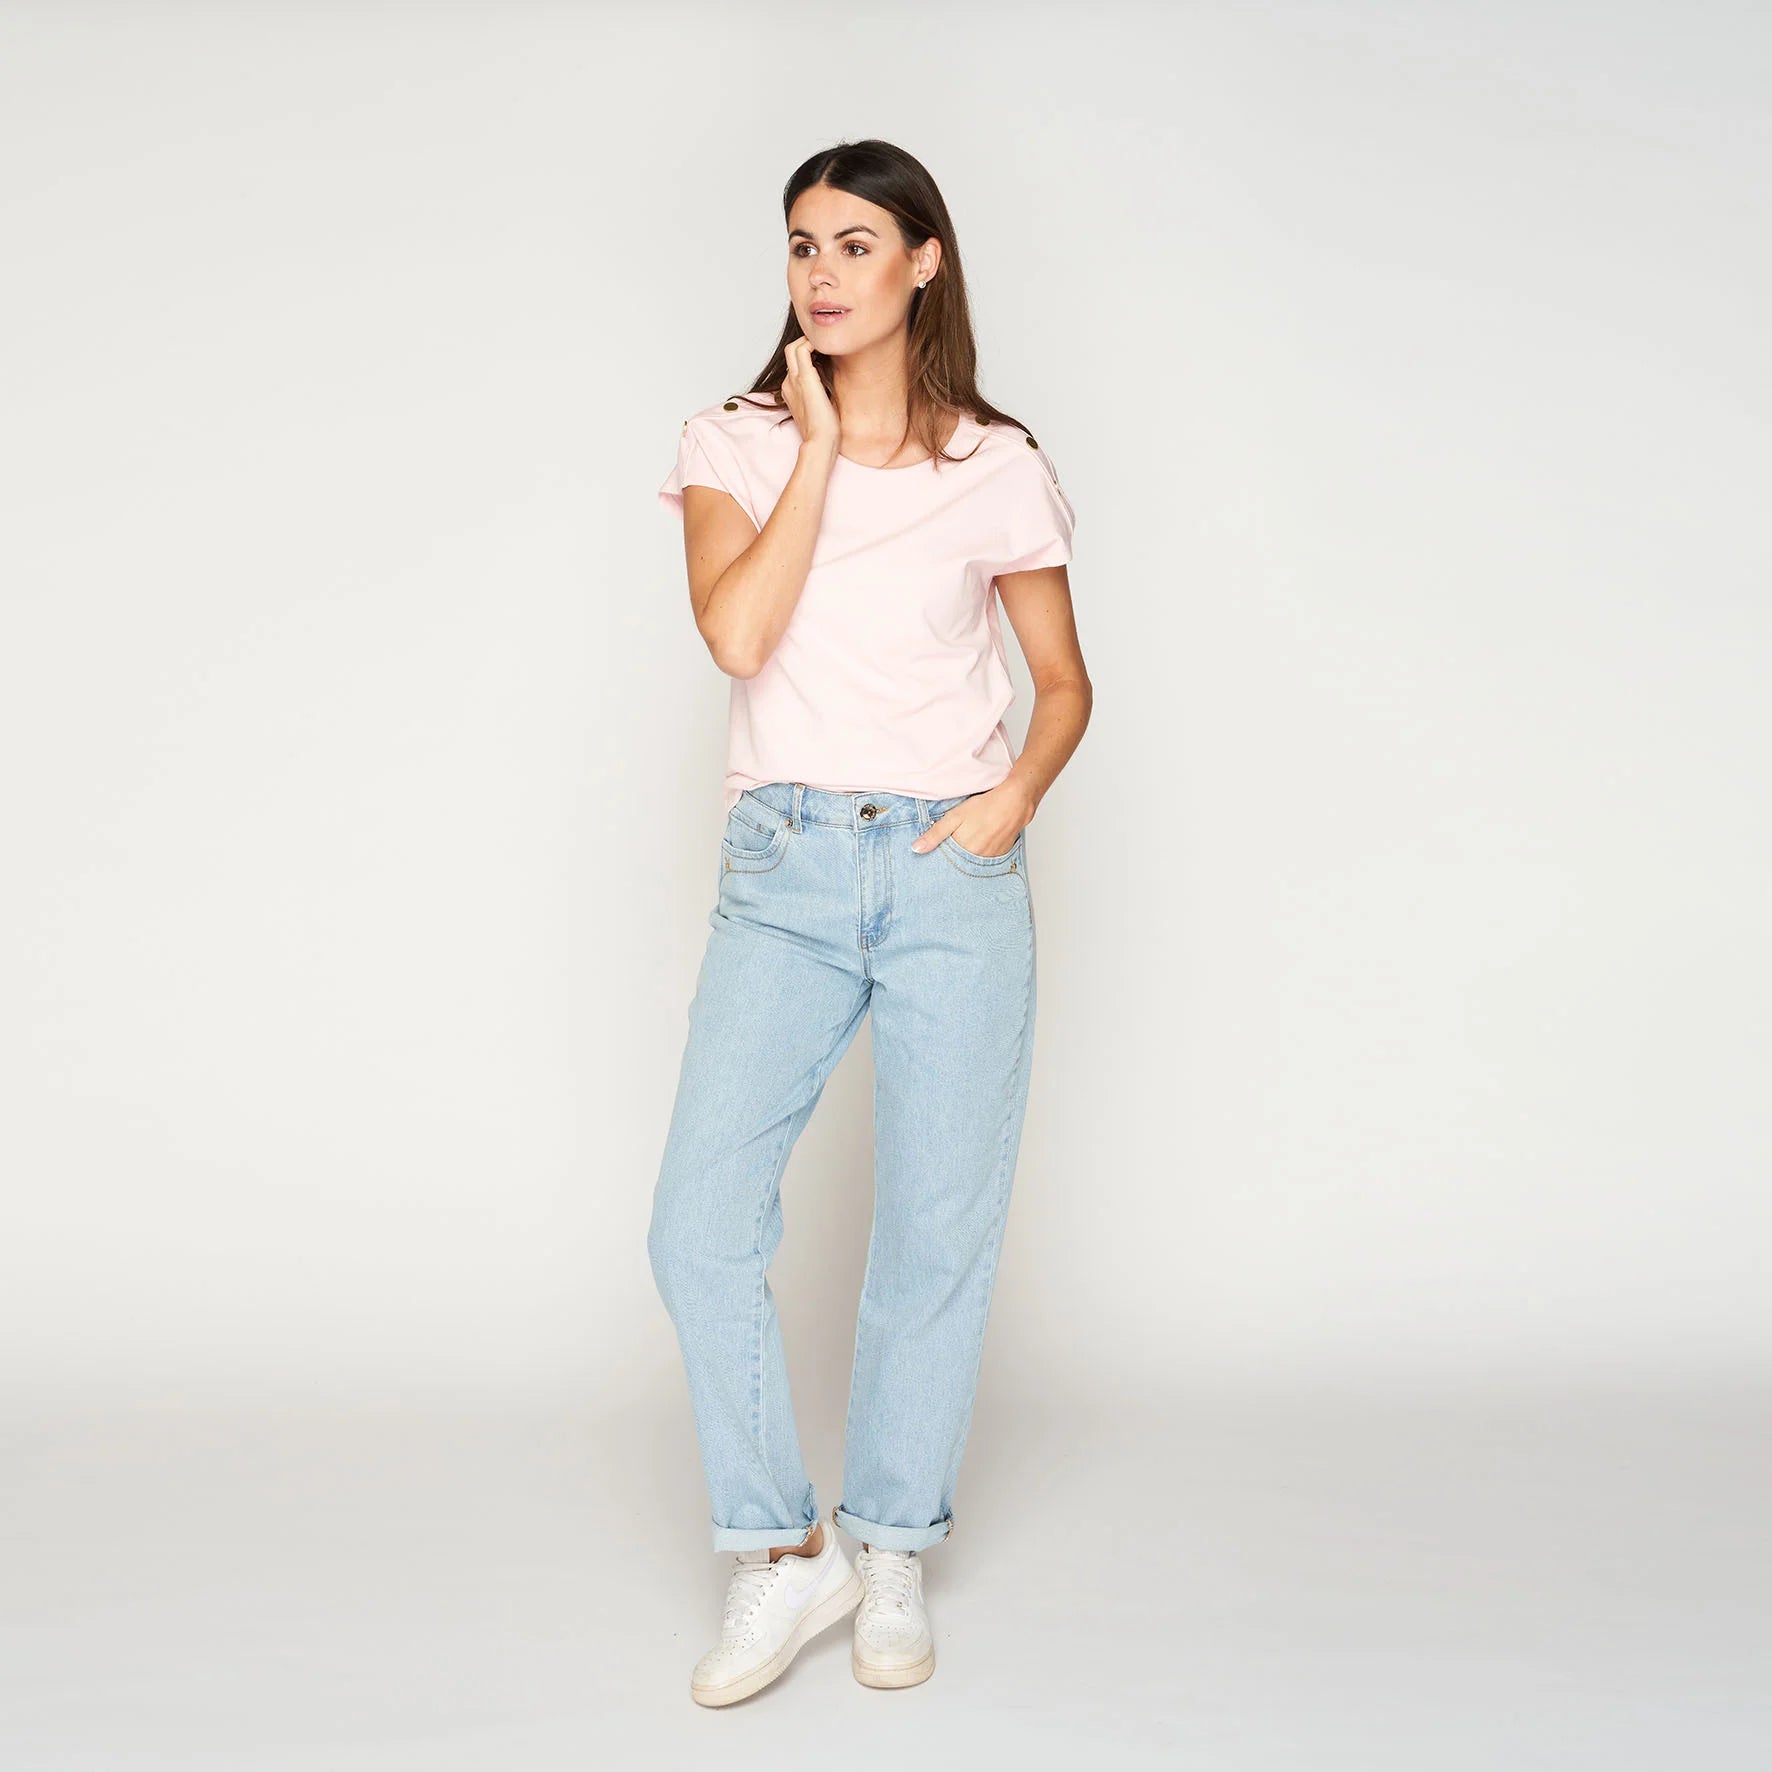 hippe jeans met een rose t-shirt erboven gecombineerd